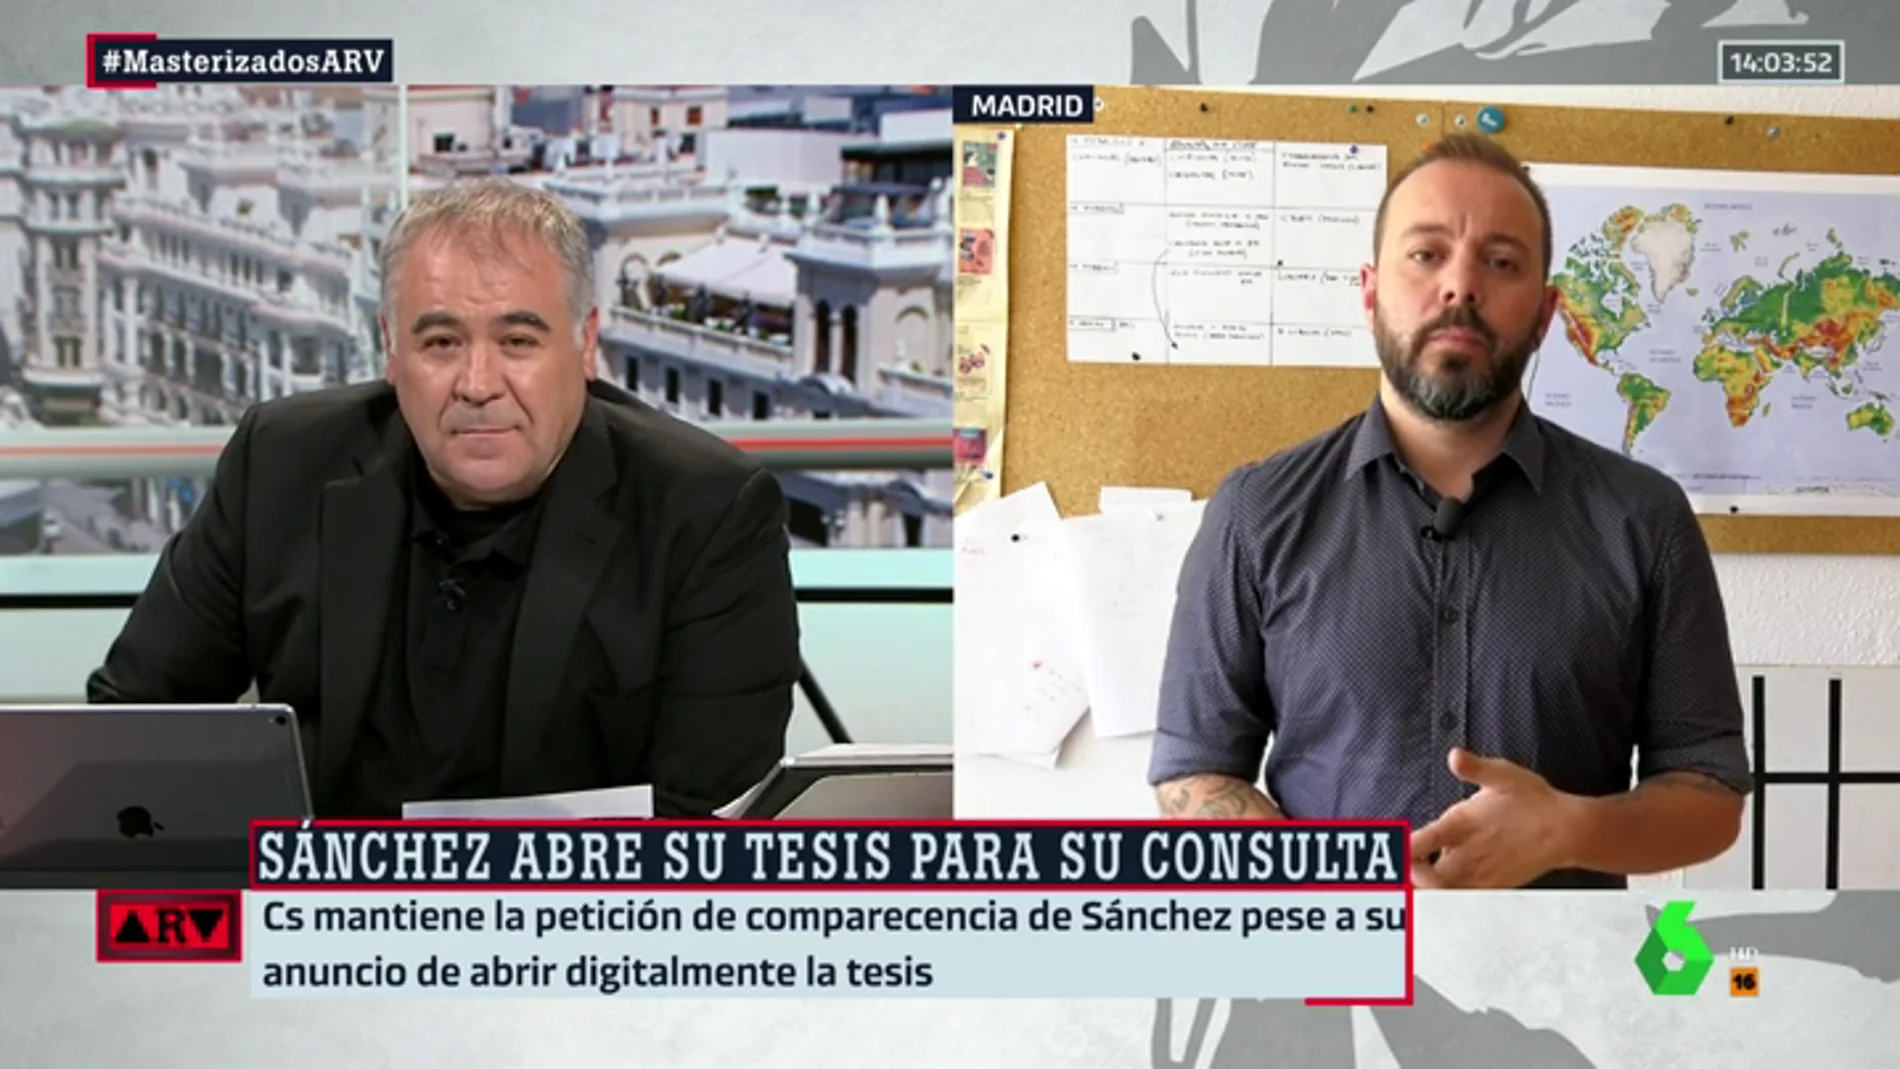 Antonio Maestre desmiente la información de ABC sobre el trabajo del presidente: "Rotundamente no hay plagio en la tesis de Sánchez"